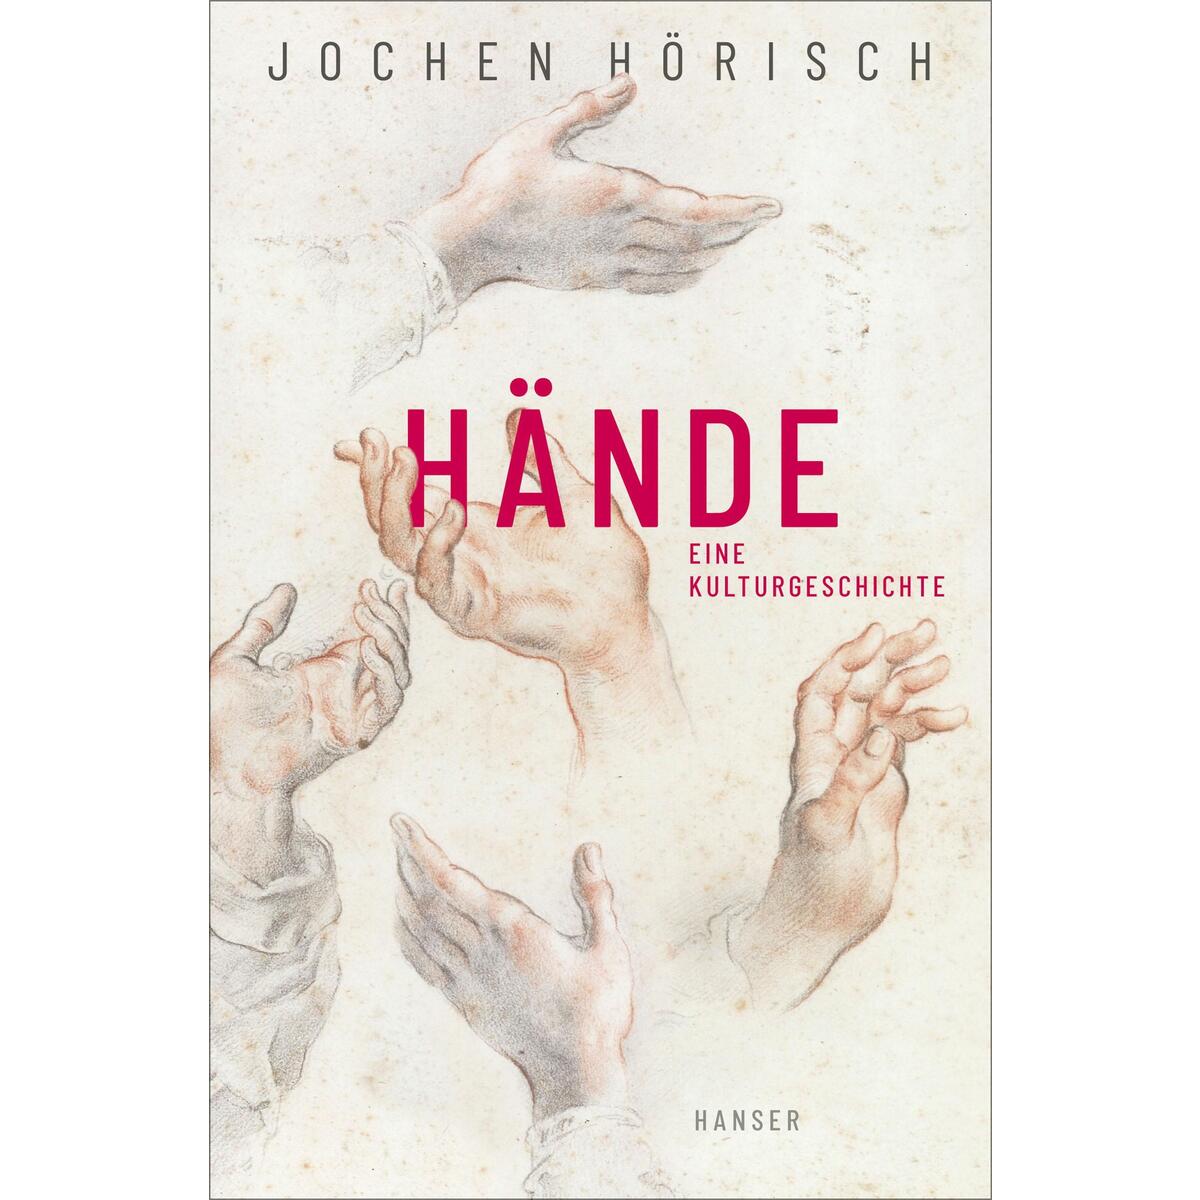 Hände von Carl Hanser Verlag